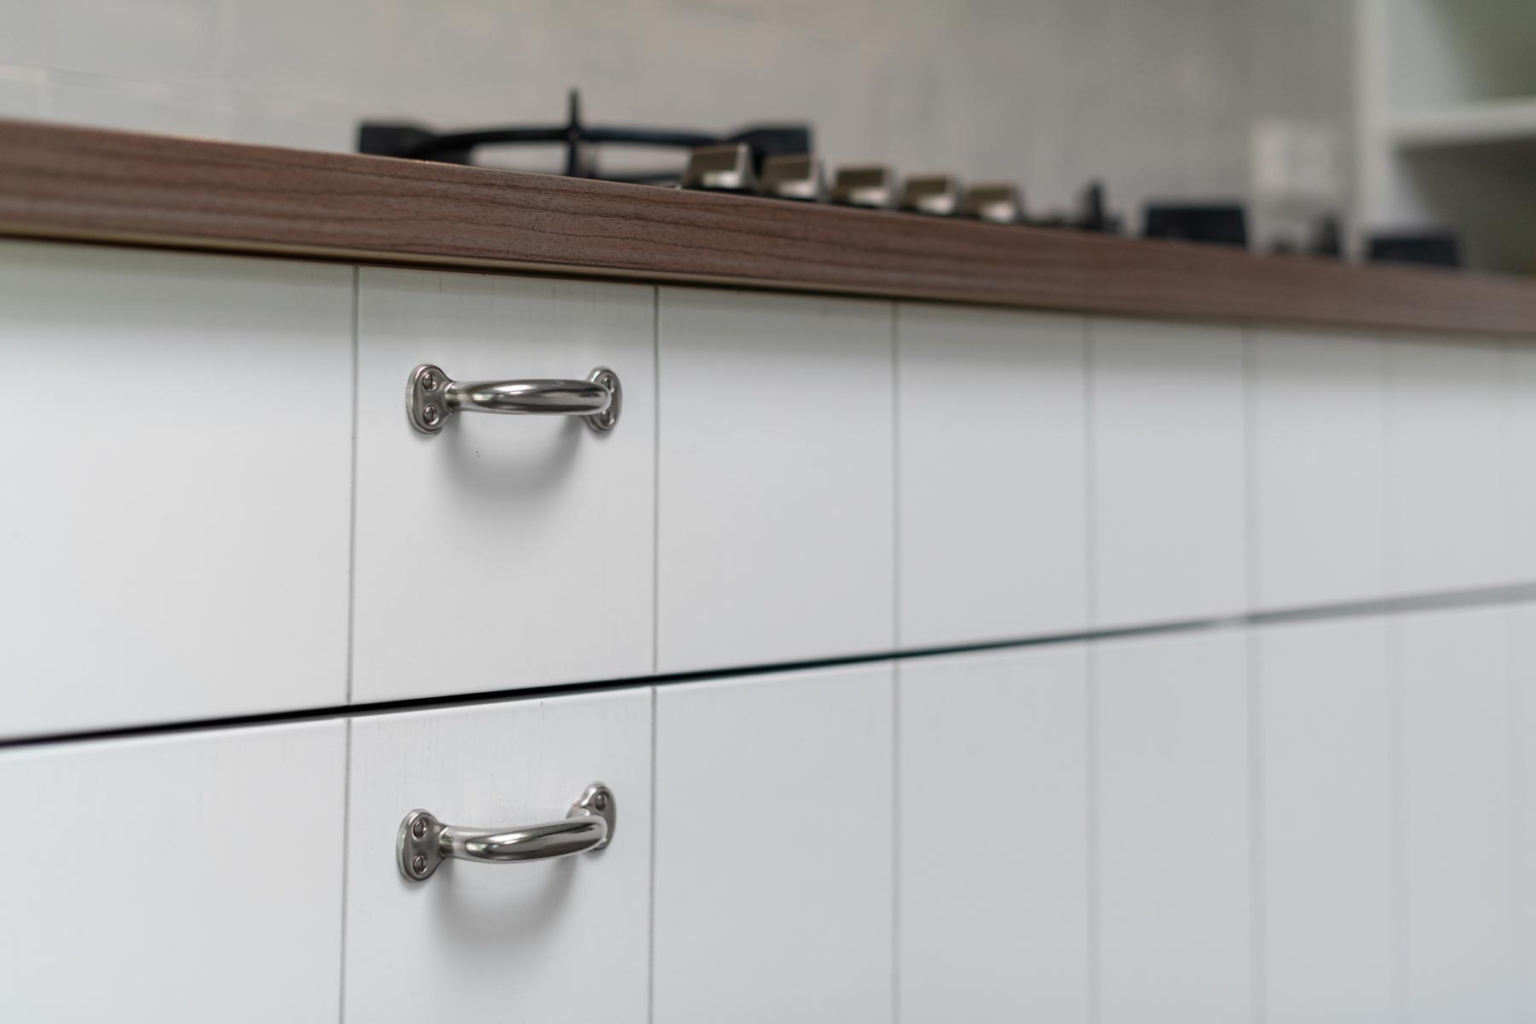 Detailfoto van greepjes op lades en deurtjes op landelijke, witte keuken op maat met ingefreesde frontjes om de aanblik van planken te creeeren.